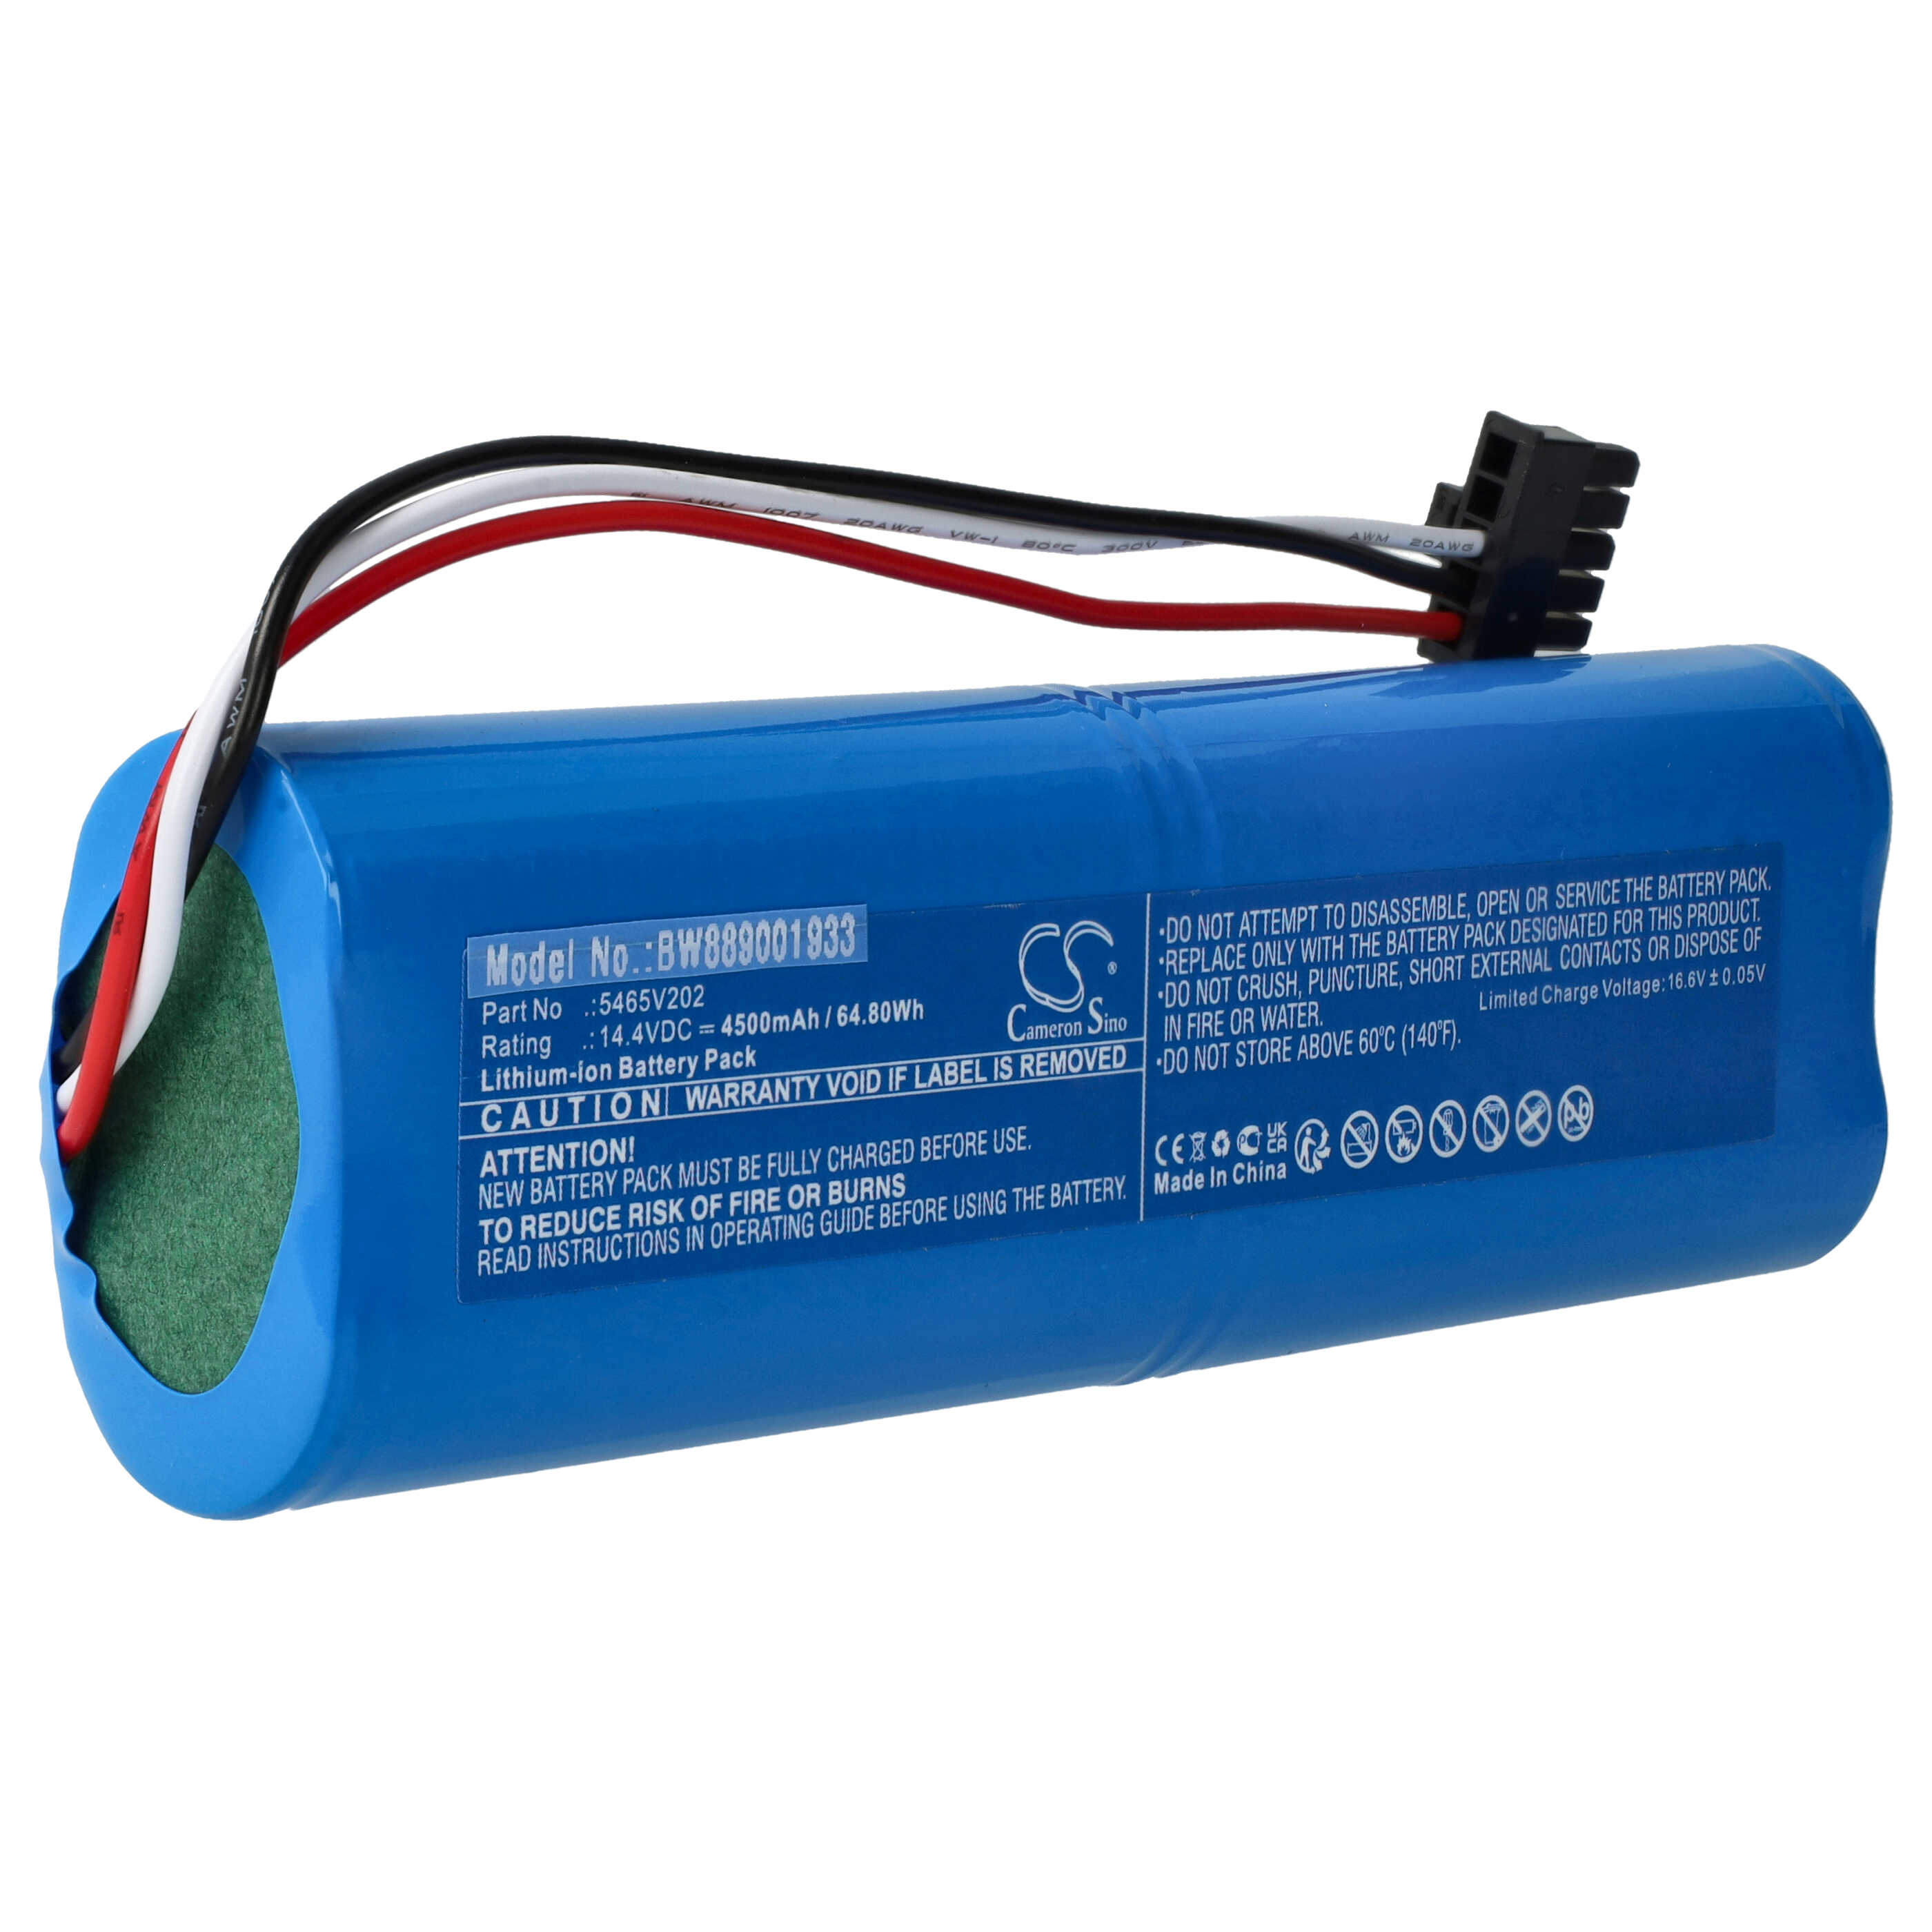 Batterie remplace Xiaomi 5465V202 pour robot aspirateur - 4500mAh 14,4V Li-ion